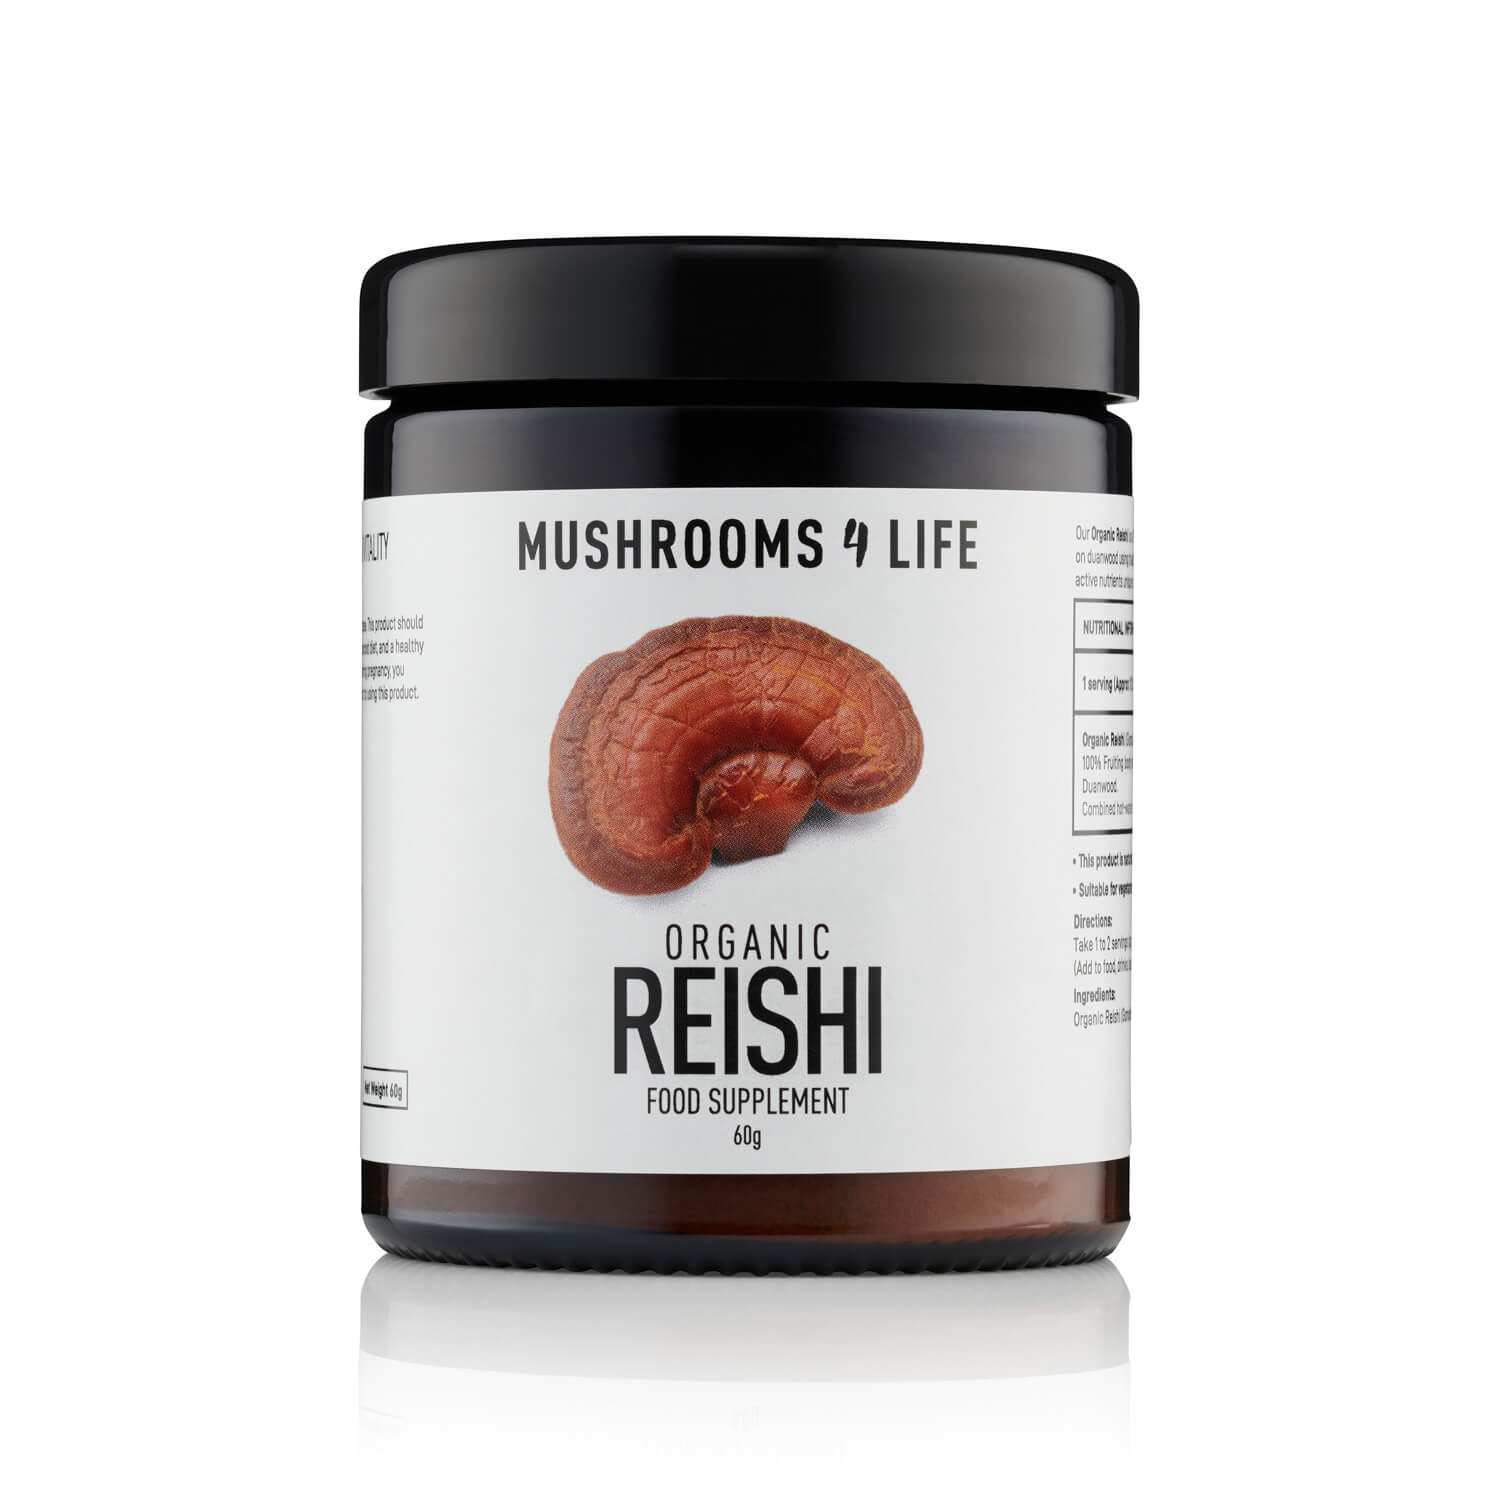 Mushroon 4 Life Reishi Powder 60g